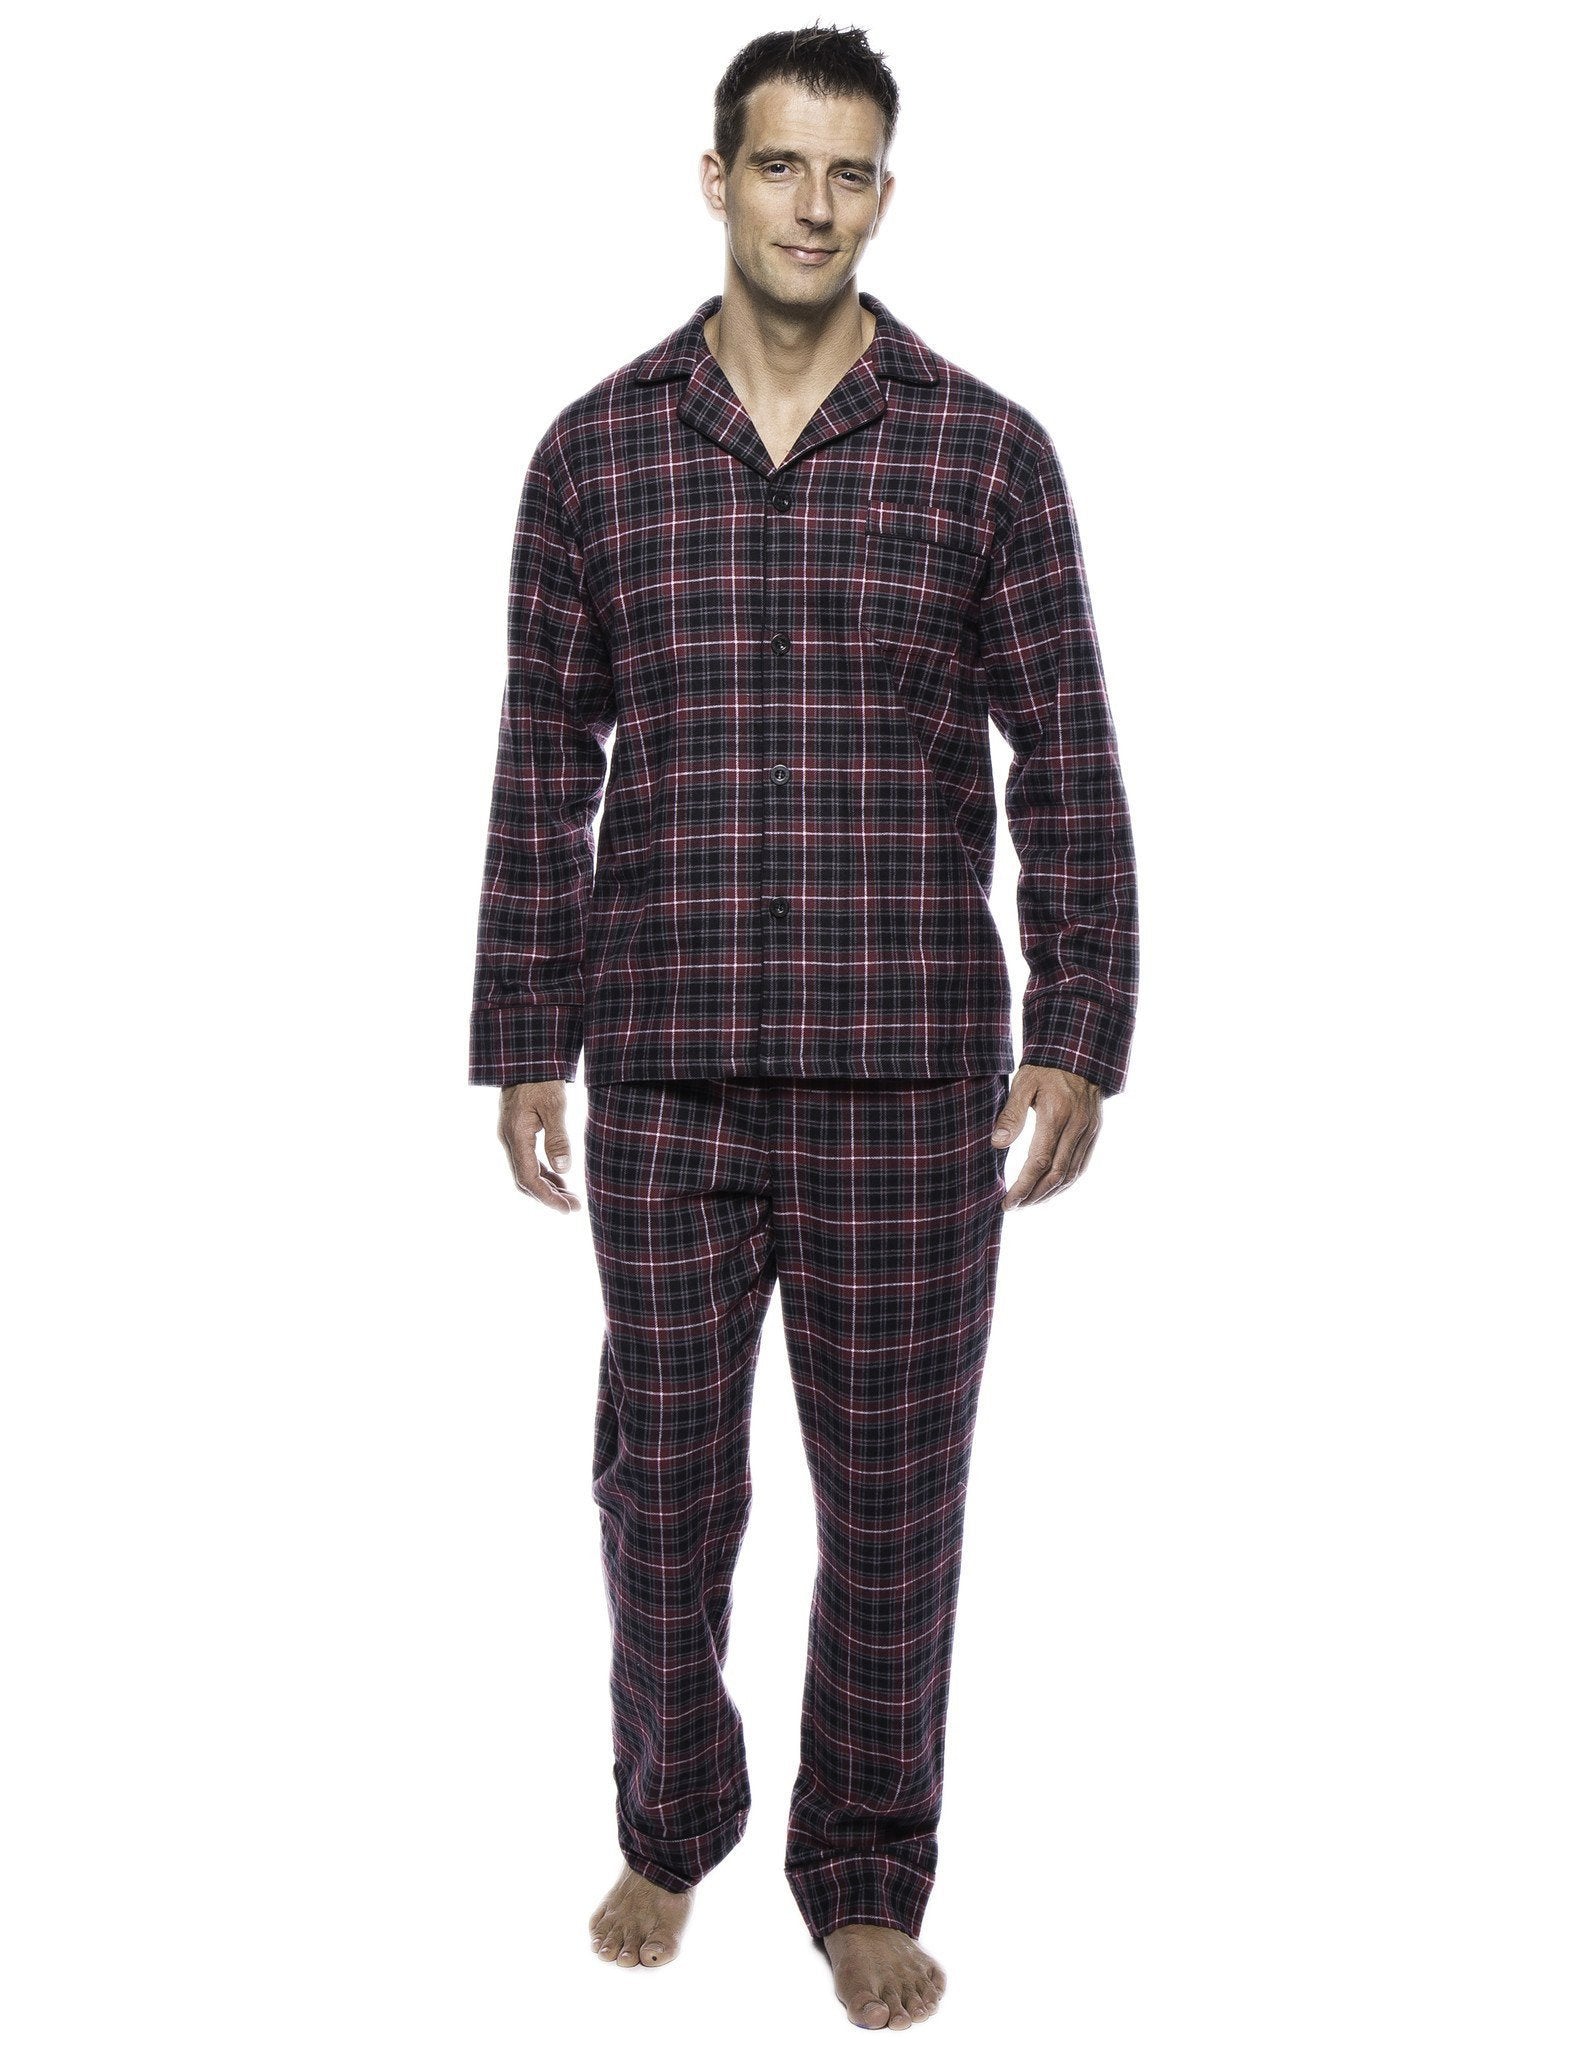 Men's Box Packaged Premium 100% Cotton Flannel Pajama Sleepwear Set